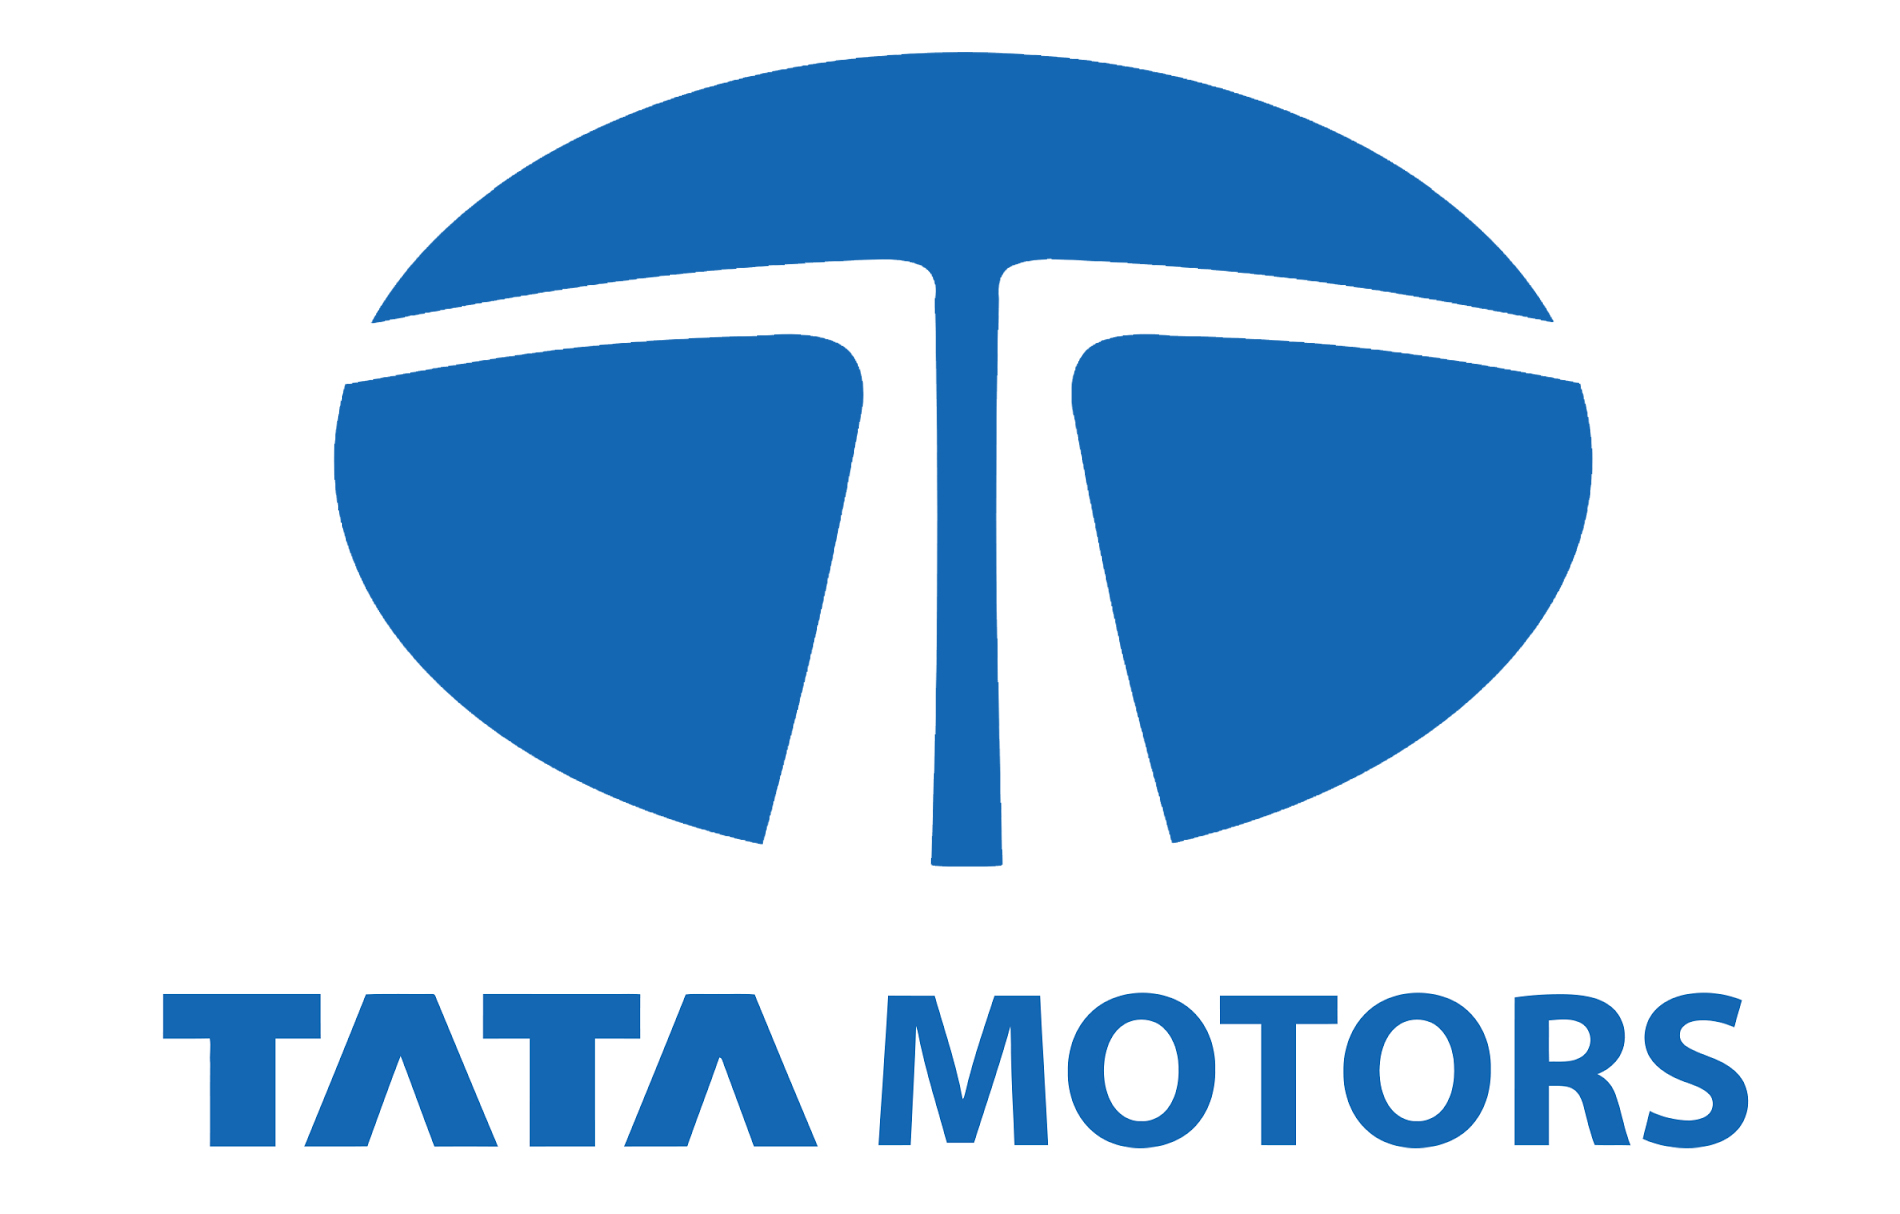 Tata Motors Cars Showroom - Select Motors|Show Room|Automotive